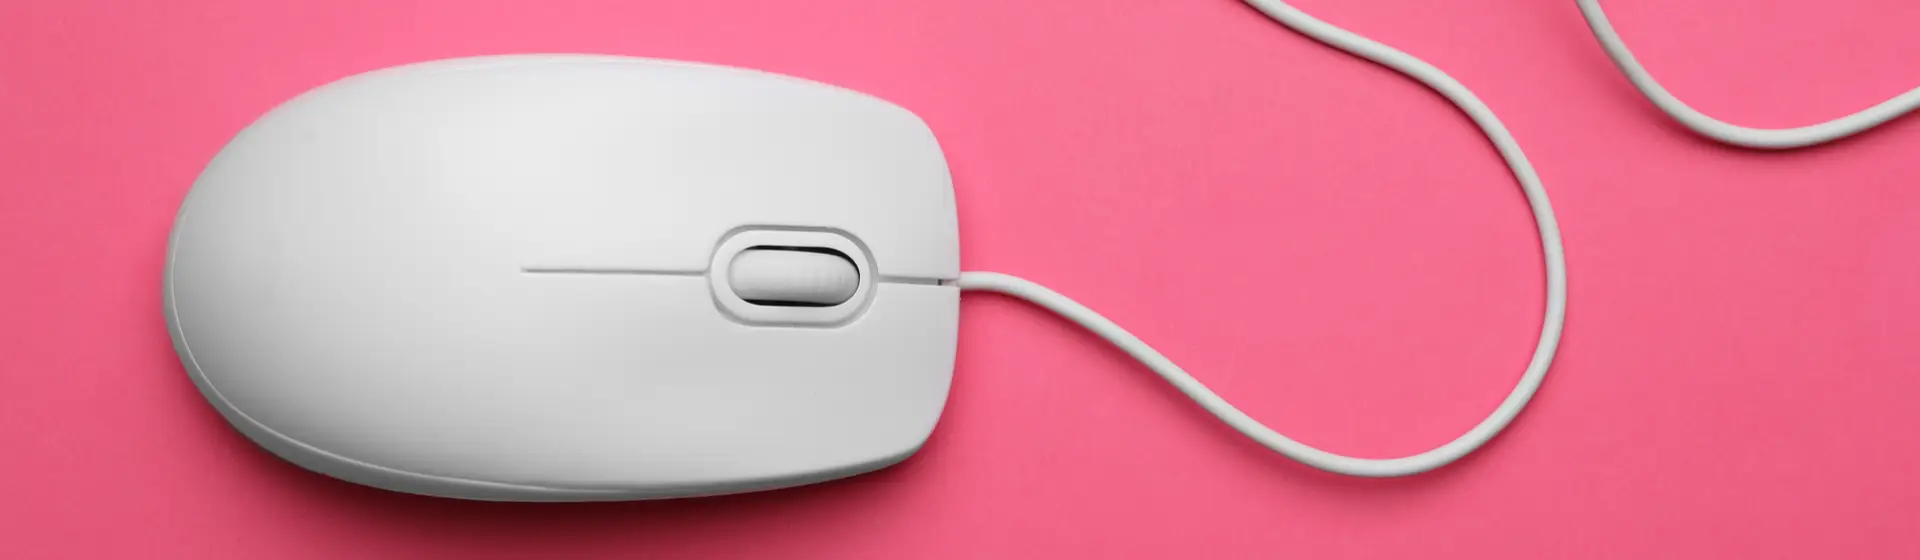 Mouse com fio: 11 opções para quem não liga para uns fios a mais